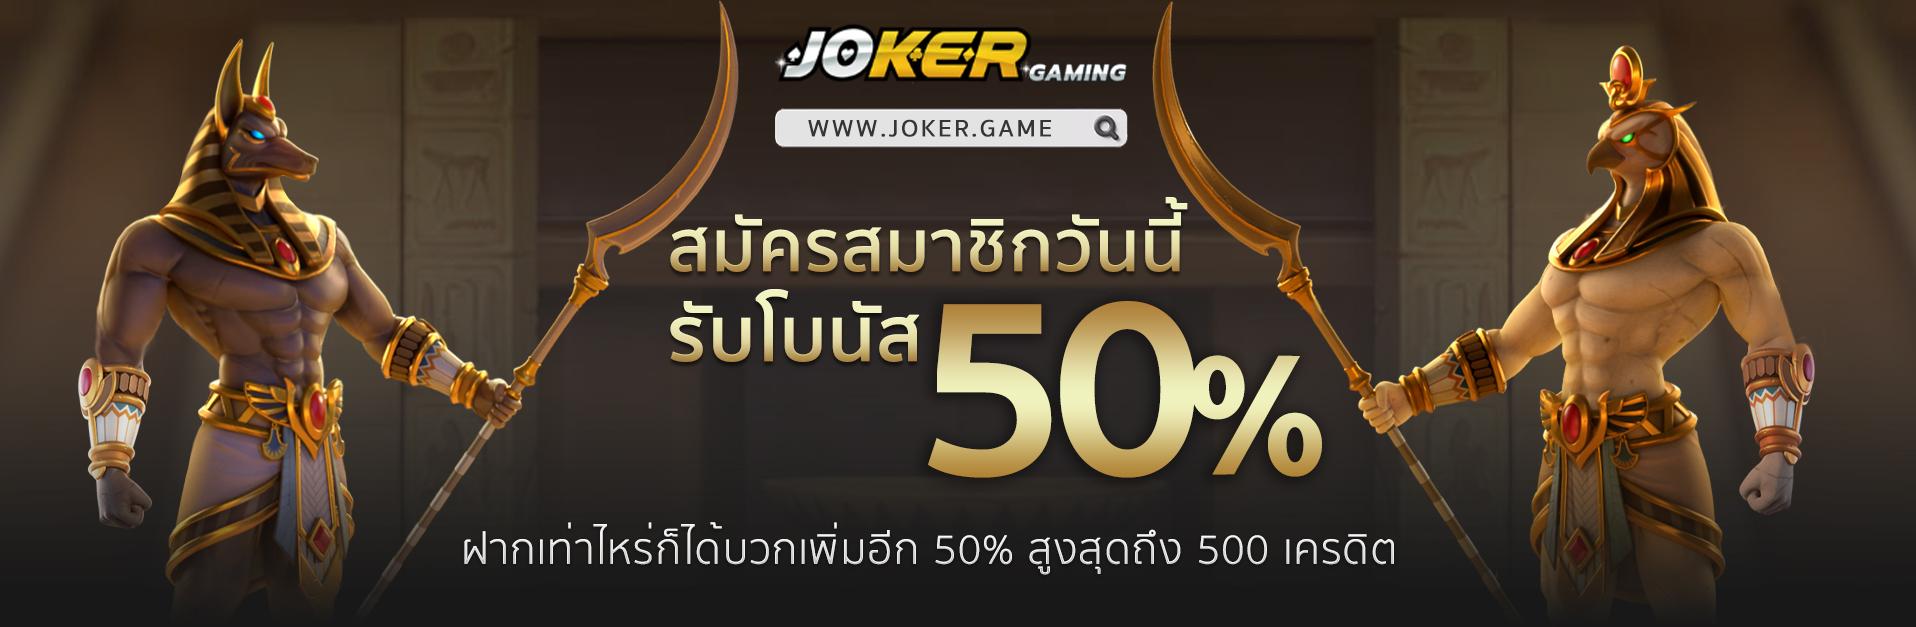 Jokerr Games